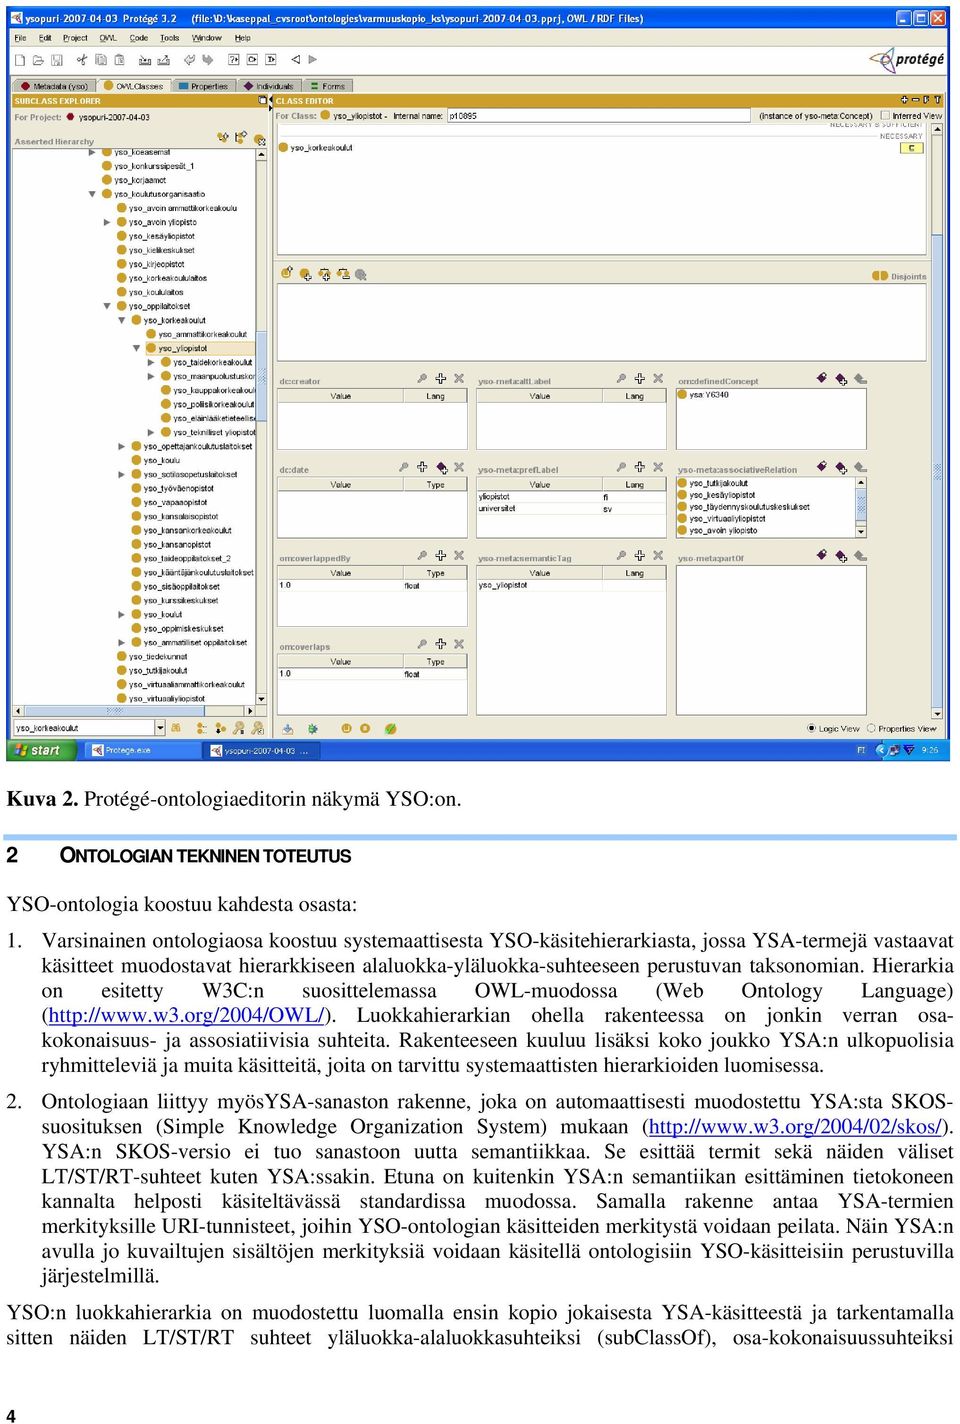 Hierarkia on esitetty W3C:n suosittelemassa OWL-muodossa (Web Ontology Language) (http://www.w3.org/2004/owl/).